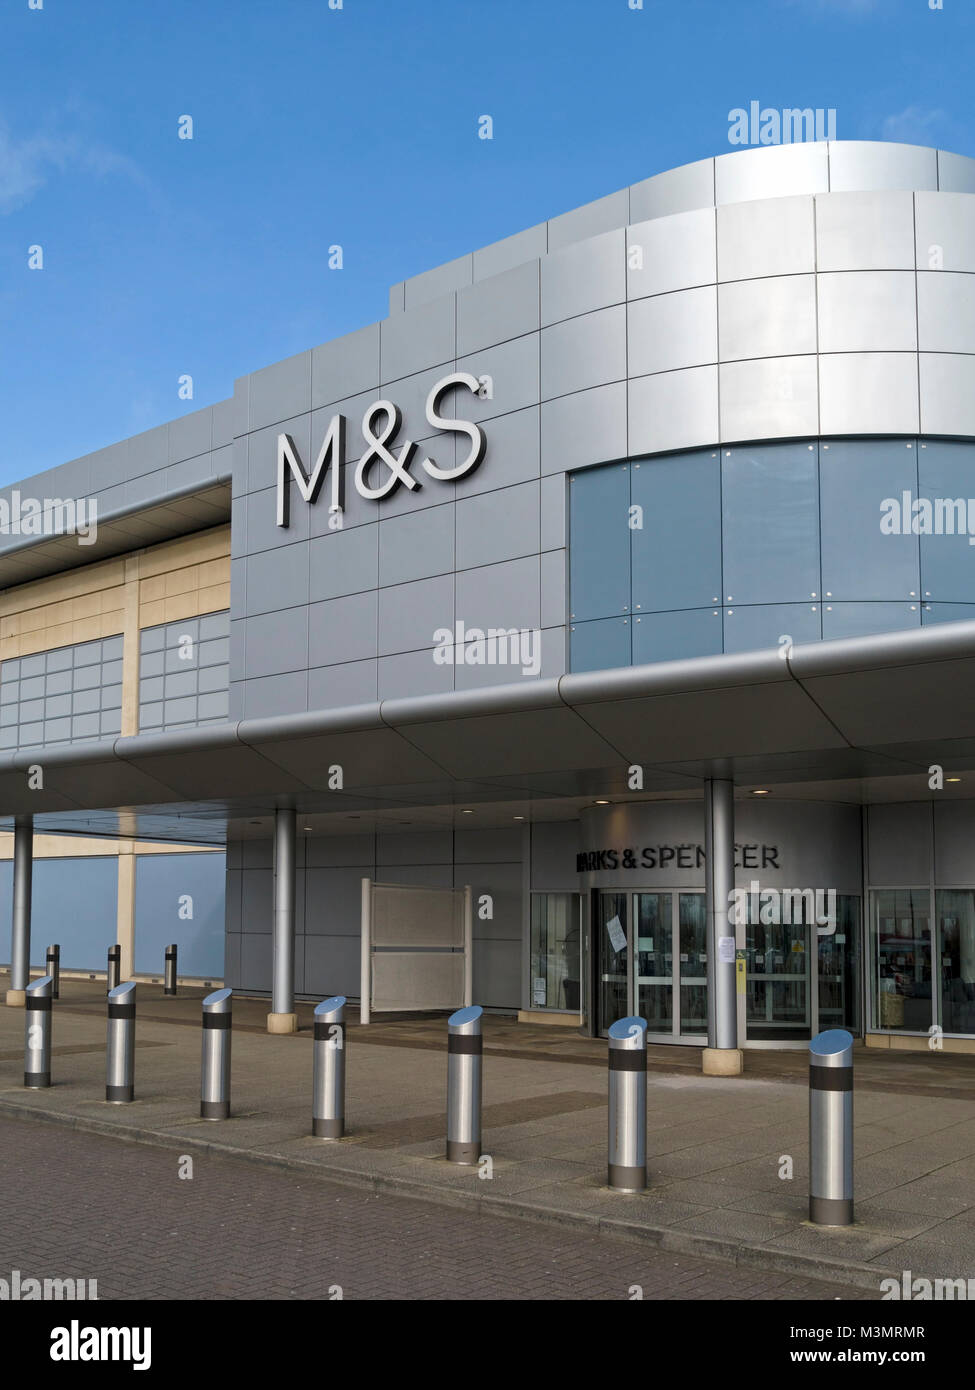 Außen- und Eingang der modernen Marks und Spencer shop shop mit M&S-Logo und der blaue Himmel, das Mall an Cribbs Causeway, Bristol, England, Großbritannien Stockfoto